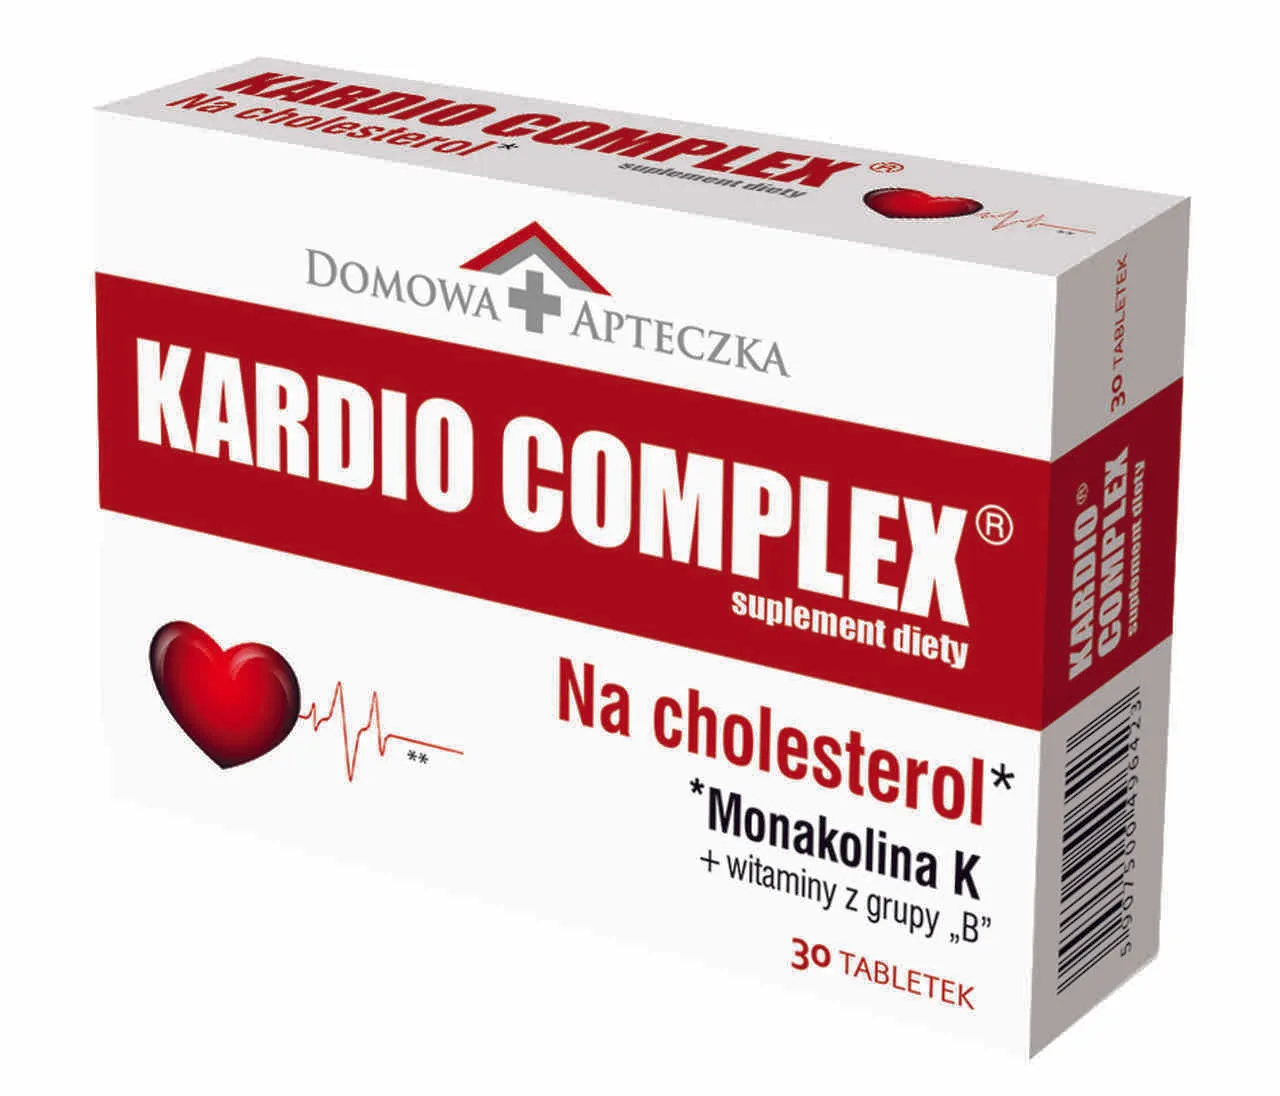 Domowa Apteczka Kardio Complex, suplement diety, 30 tabletek